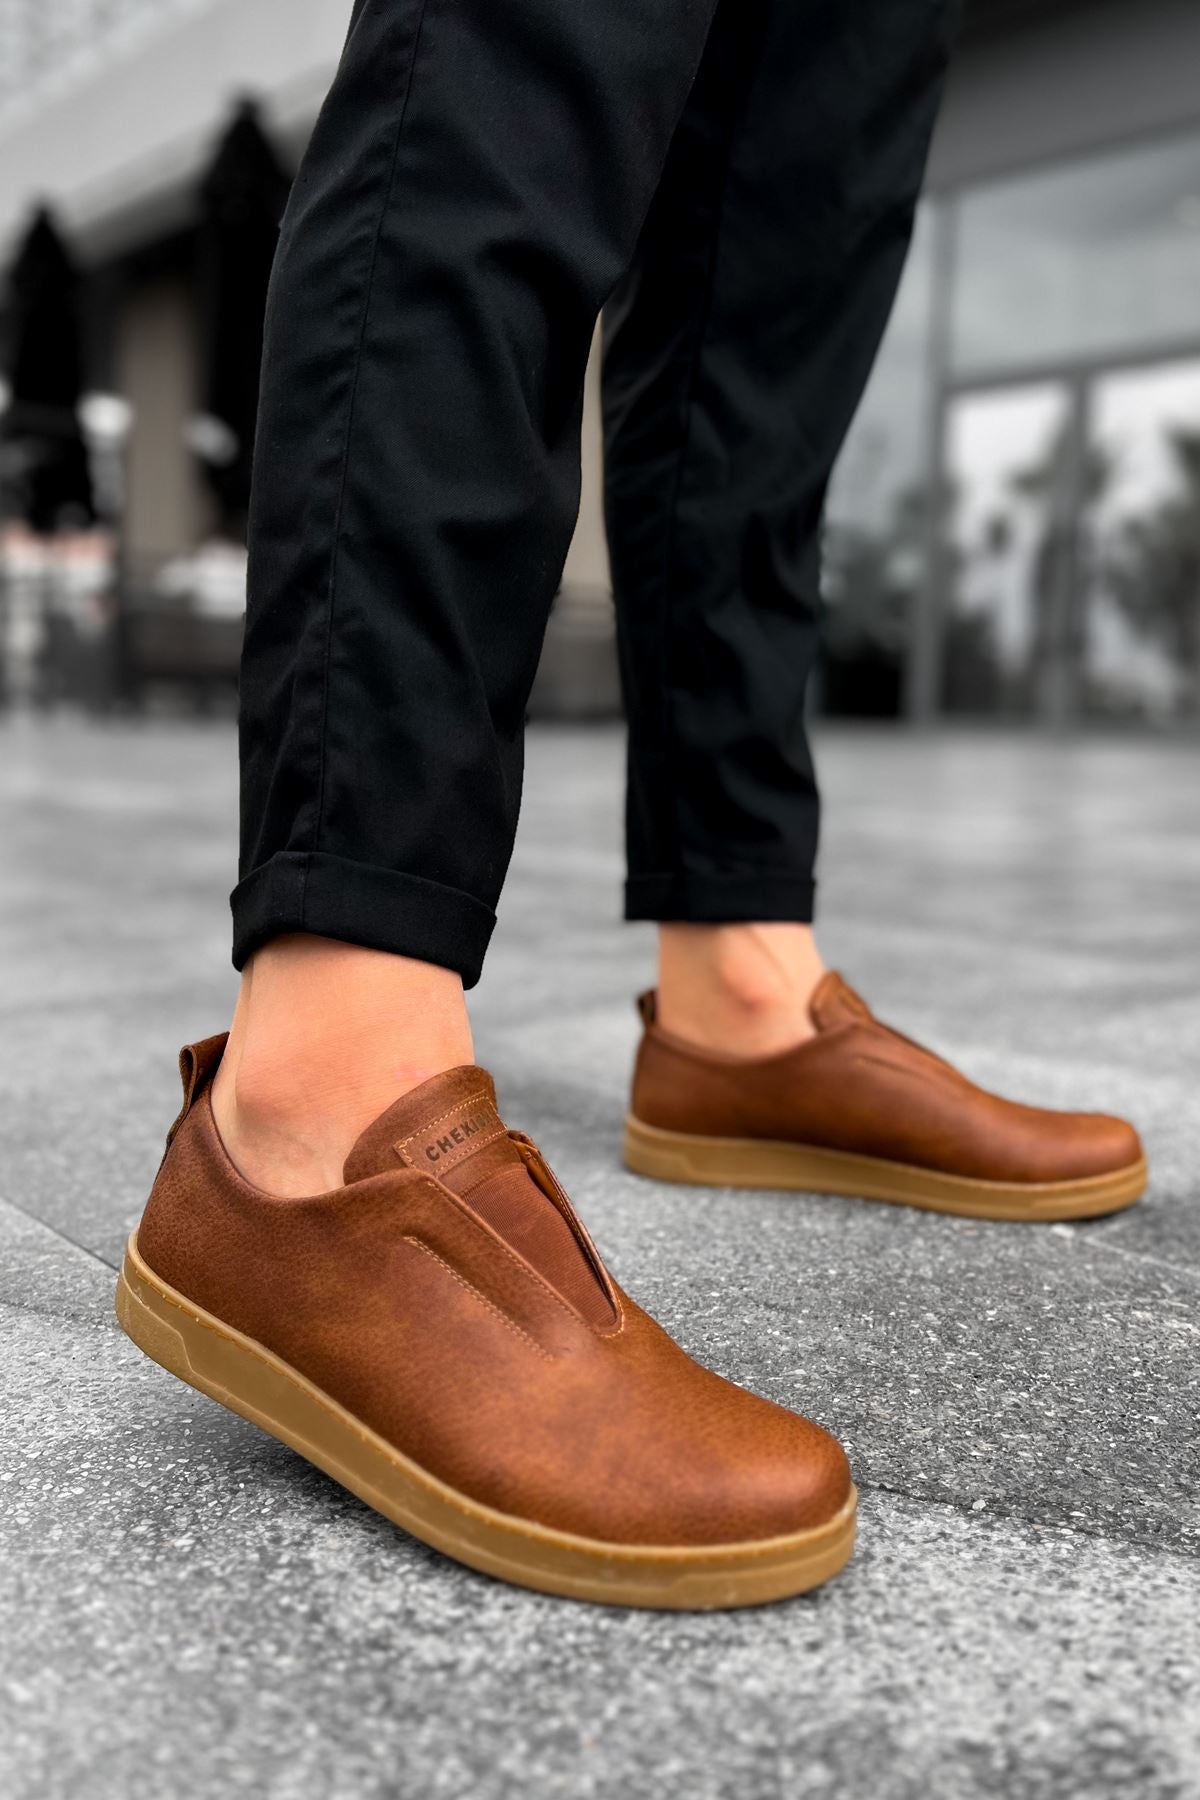 CH195 İpekyol KT Men's Shoes Sneakers Brown - STREETMODE ™